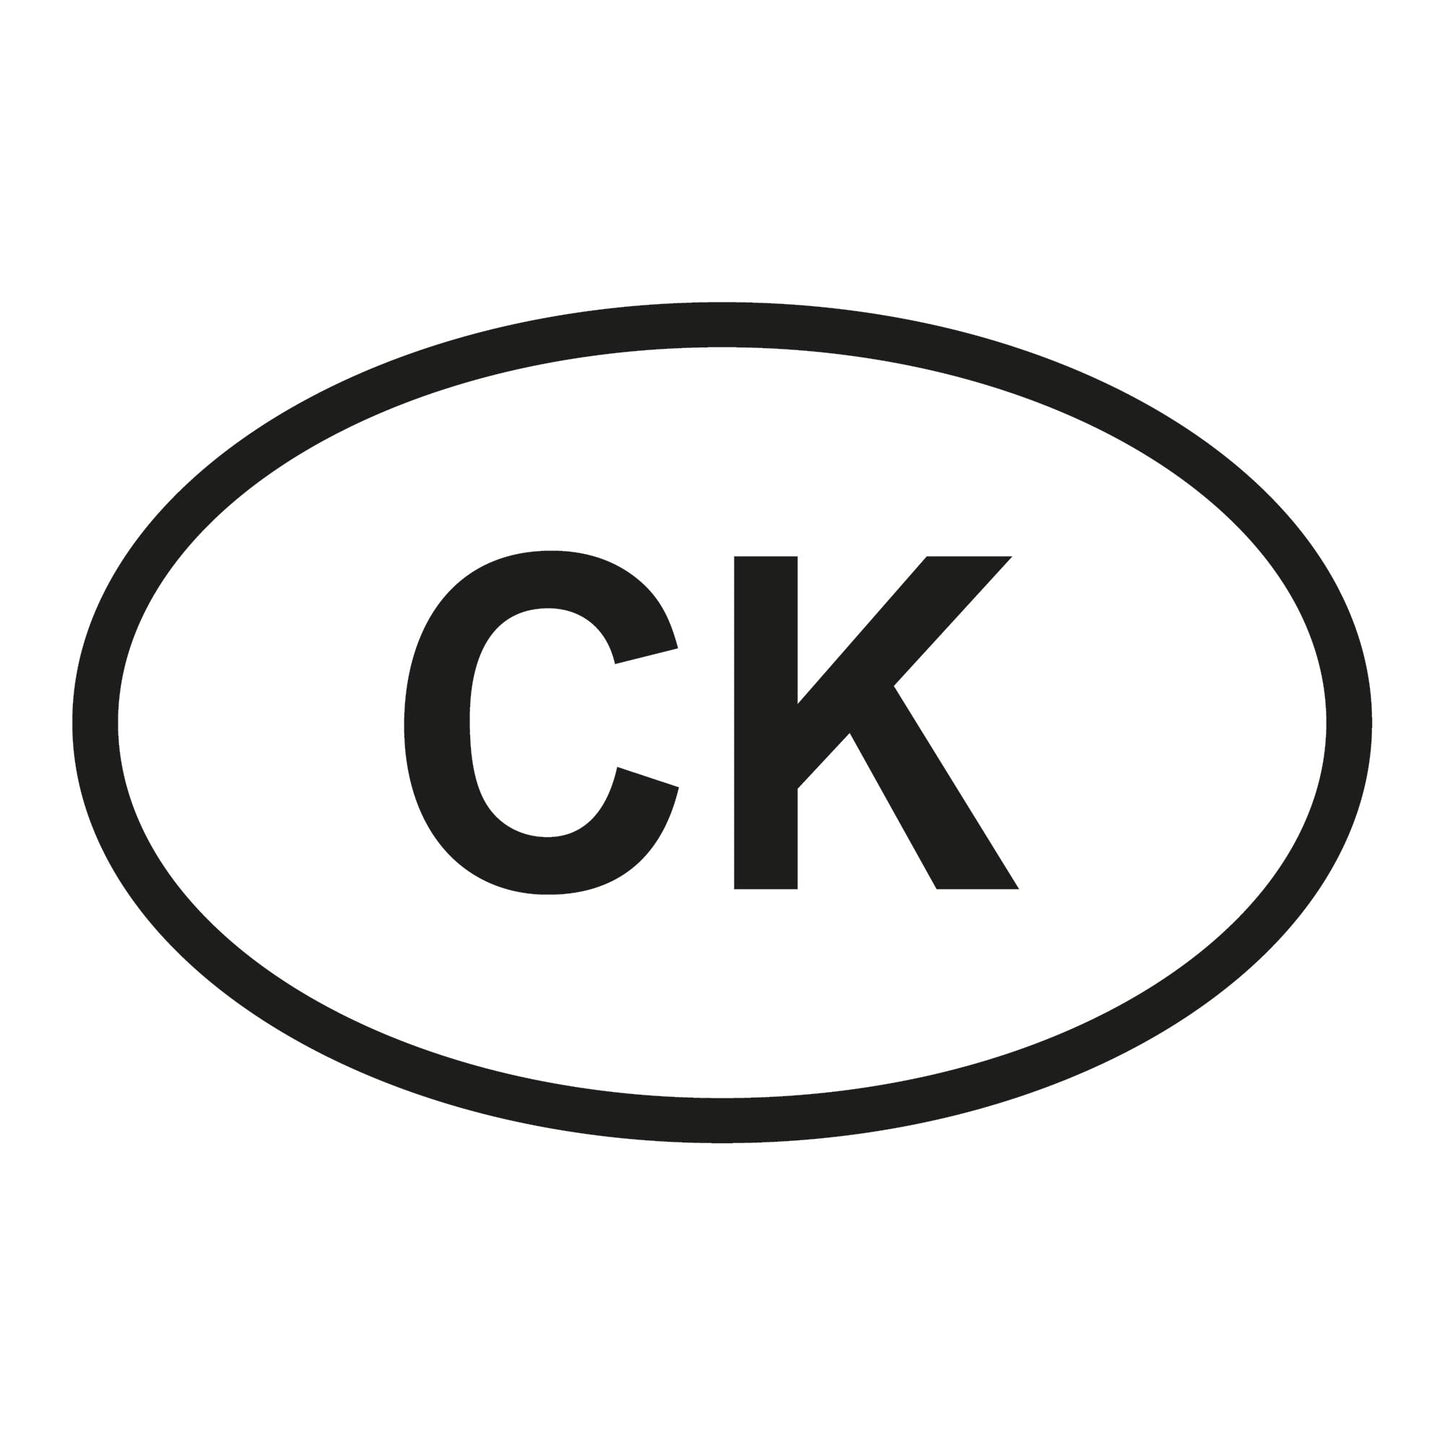 Autoaufkleber - Cookinseln CK - 110x70 mm